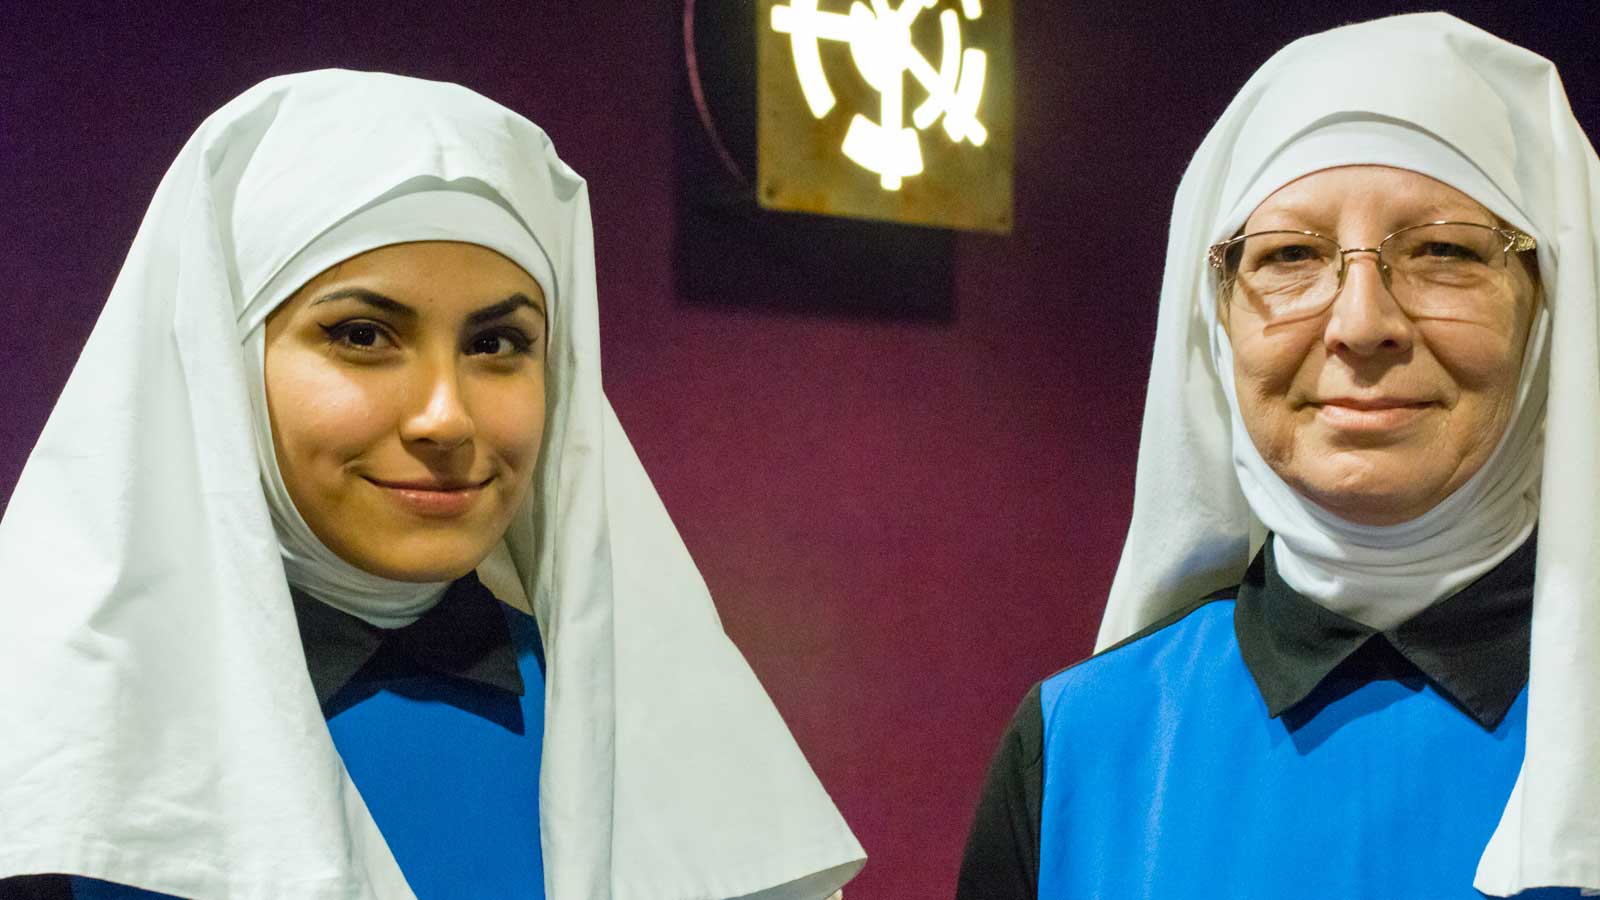 Two Nuns